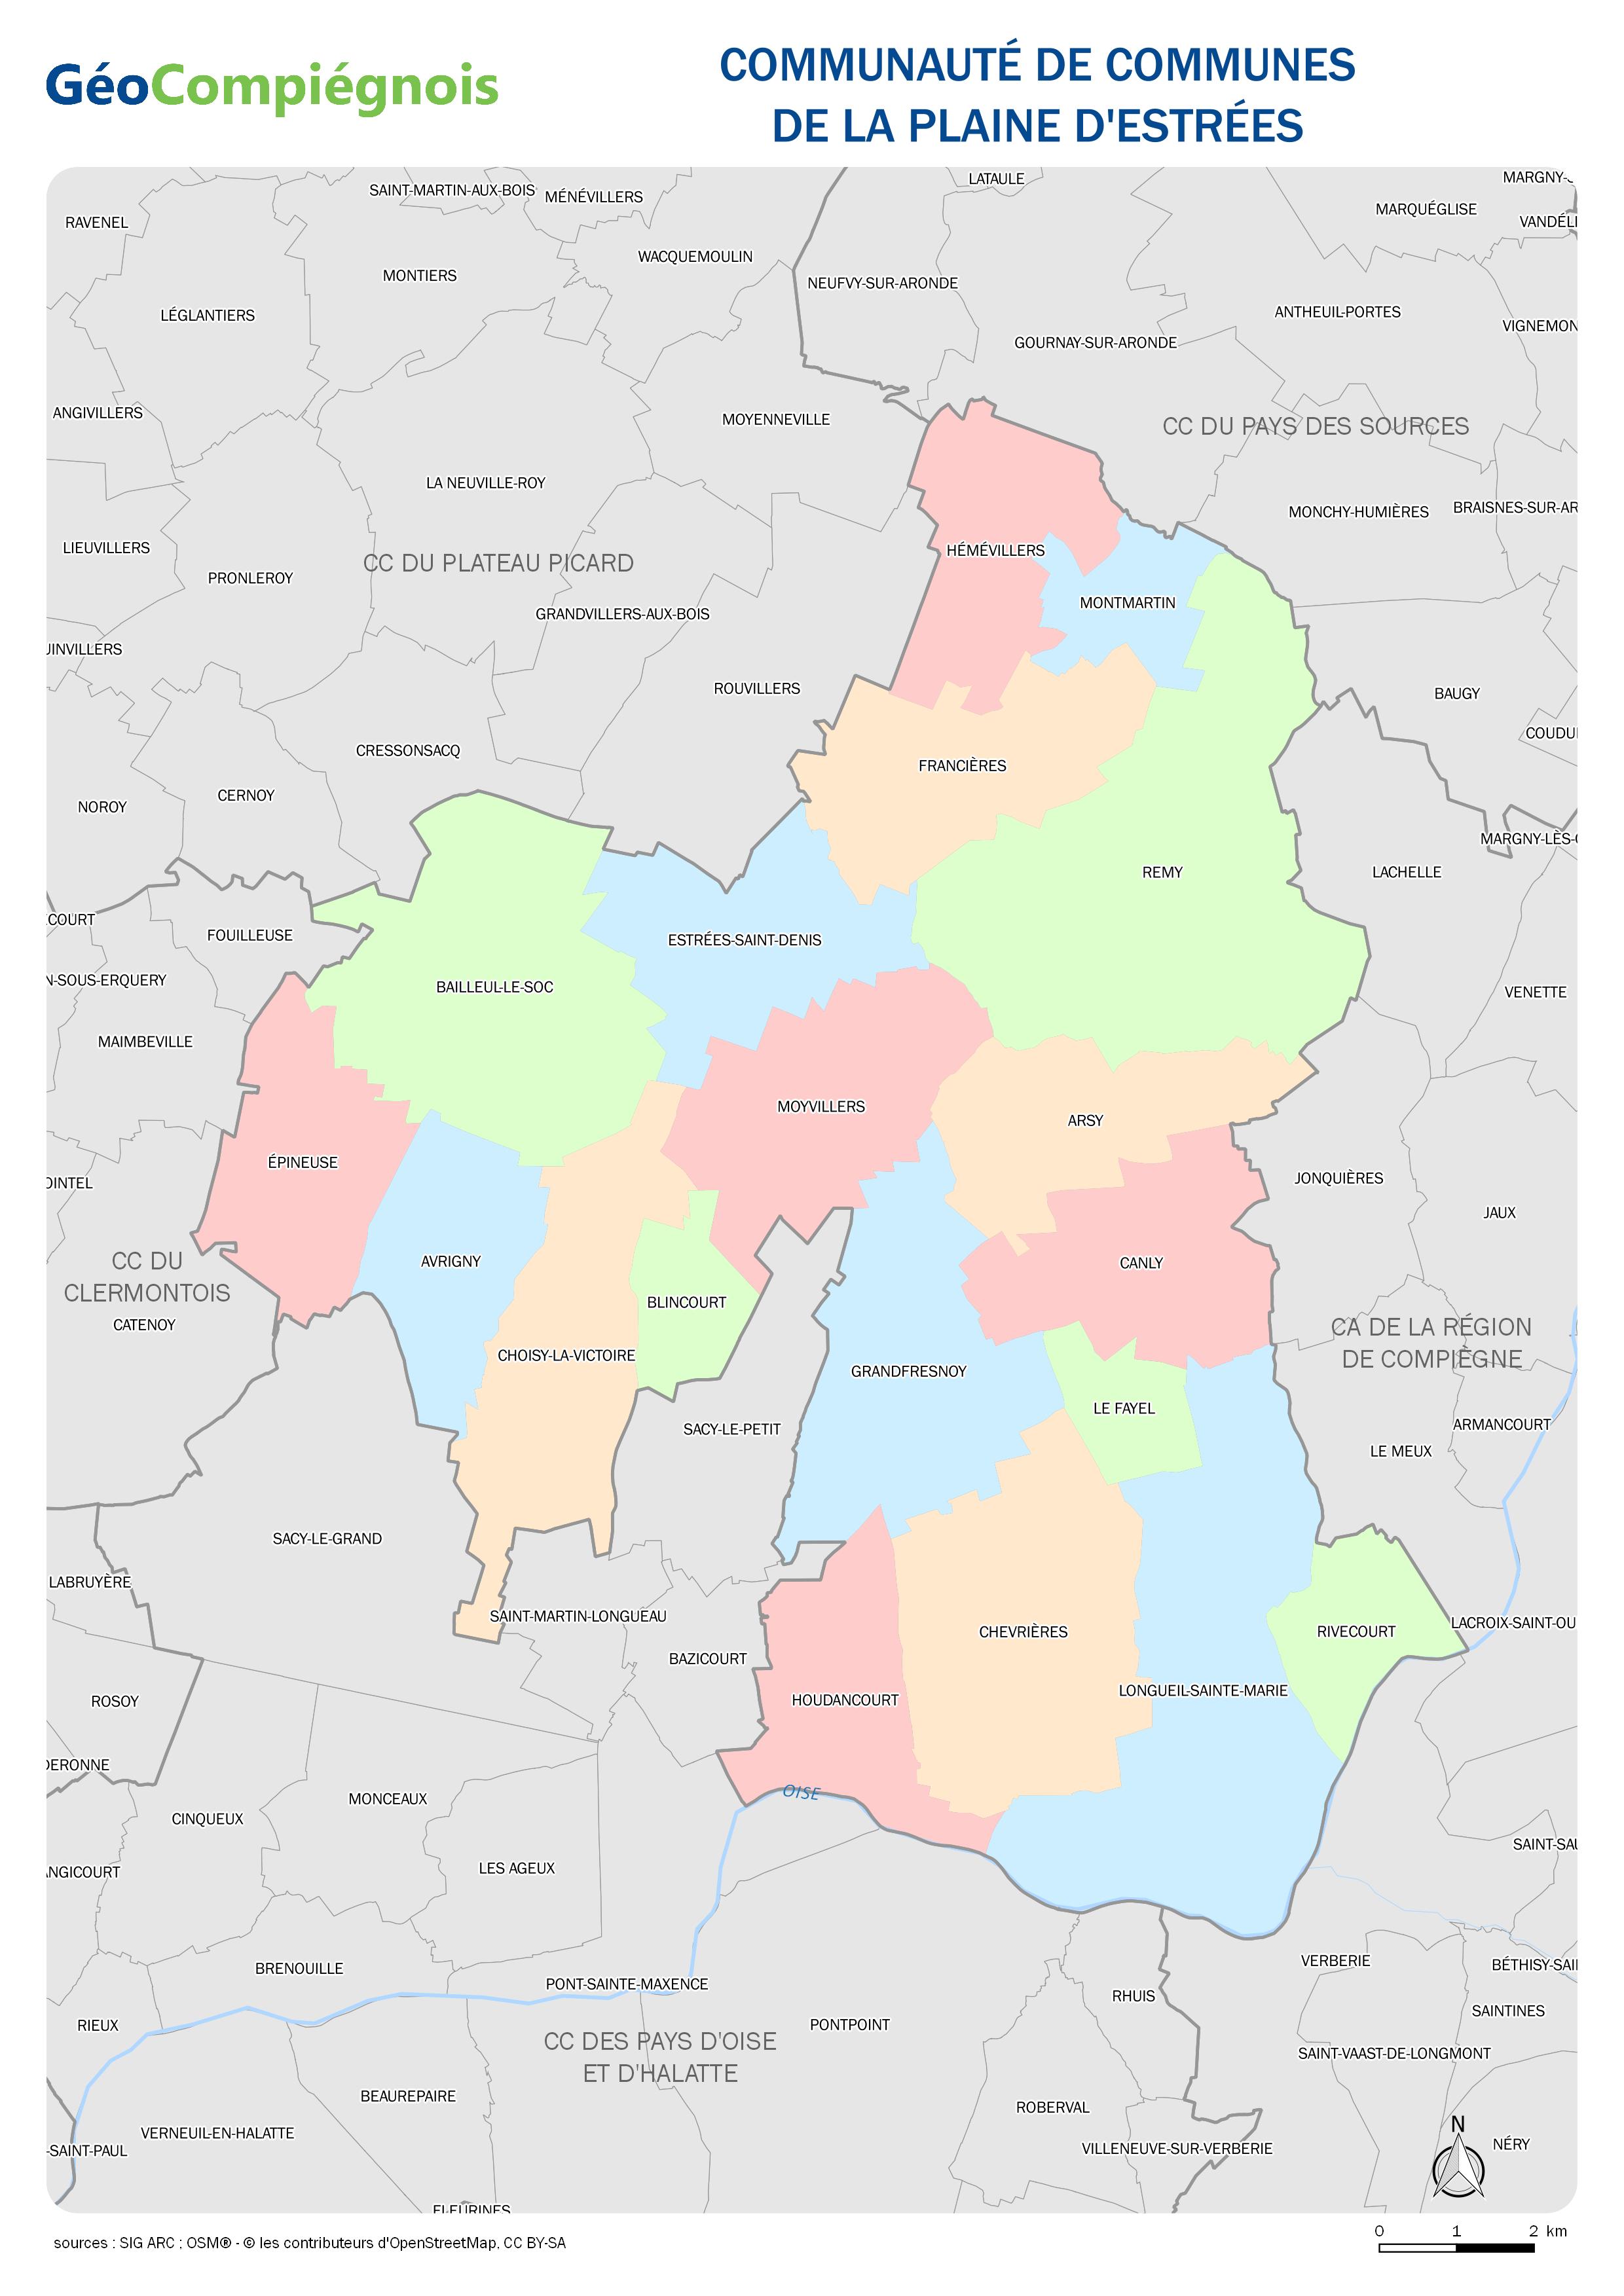 Limites administratives des collectivités de la CC de la Plaine d'Estrées